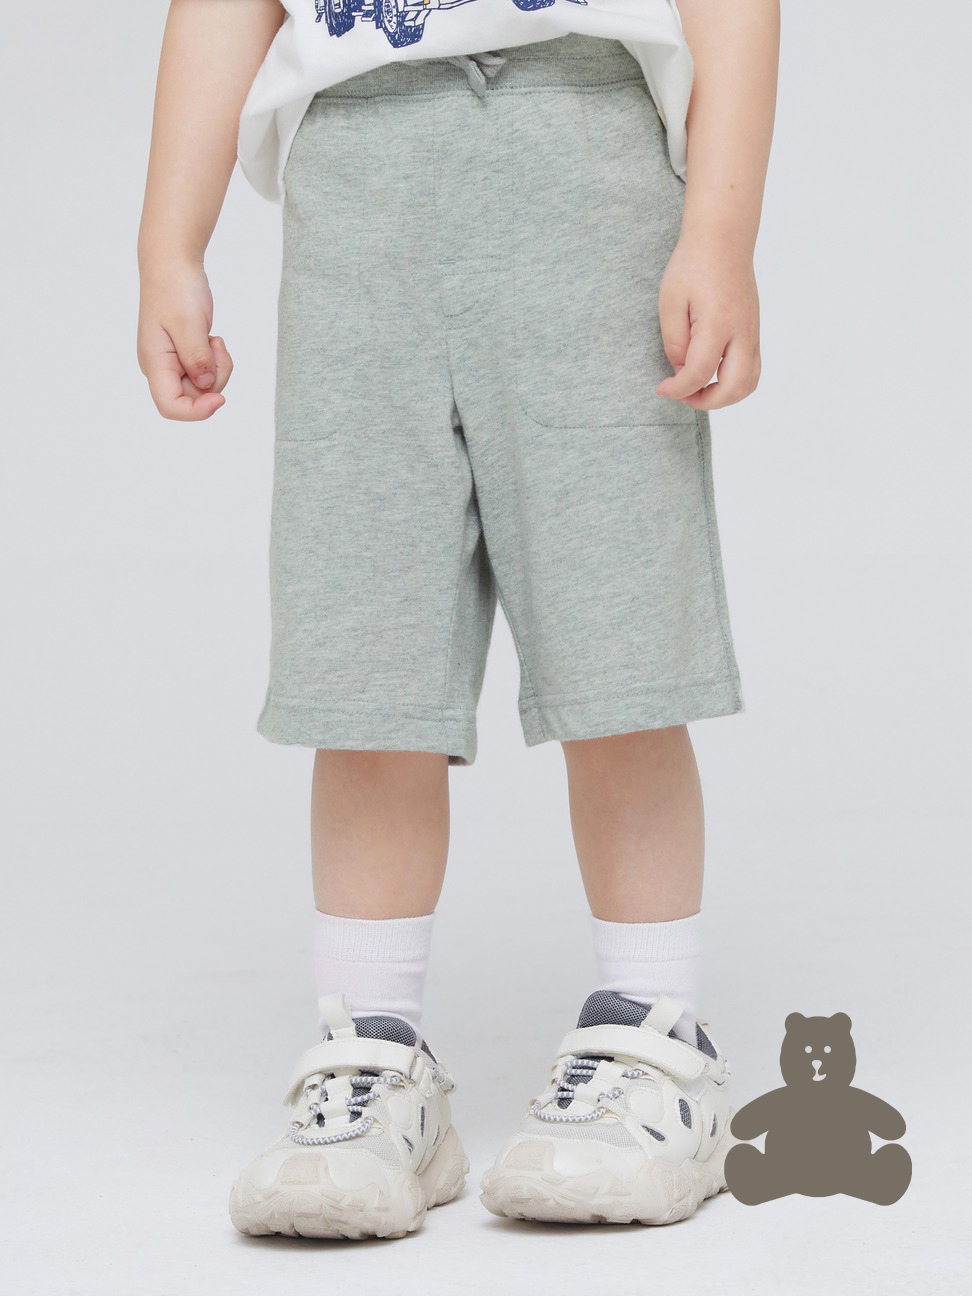 男幼童|布萊納系列 純棉簡約運動短褲